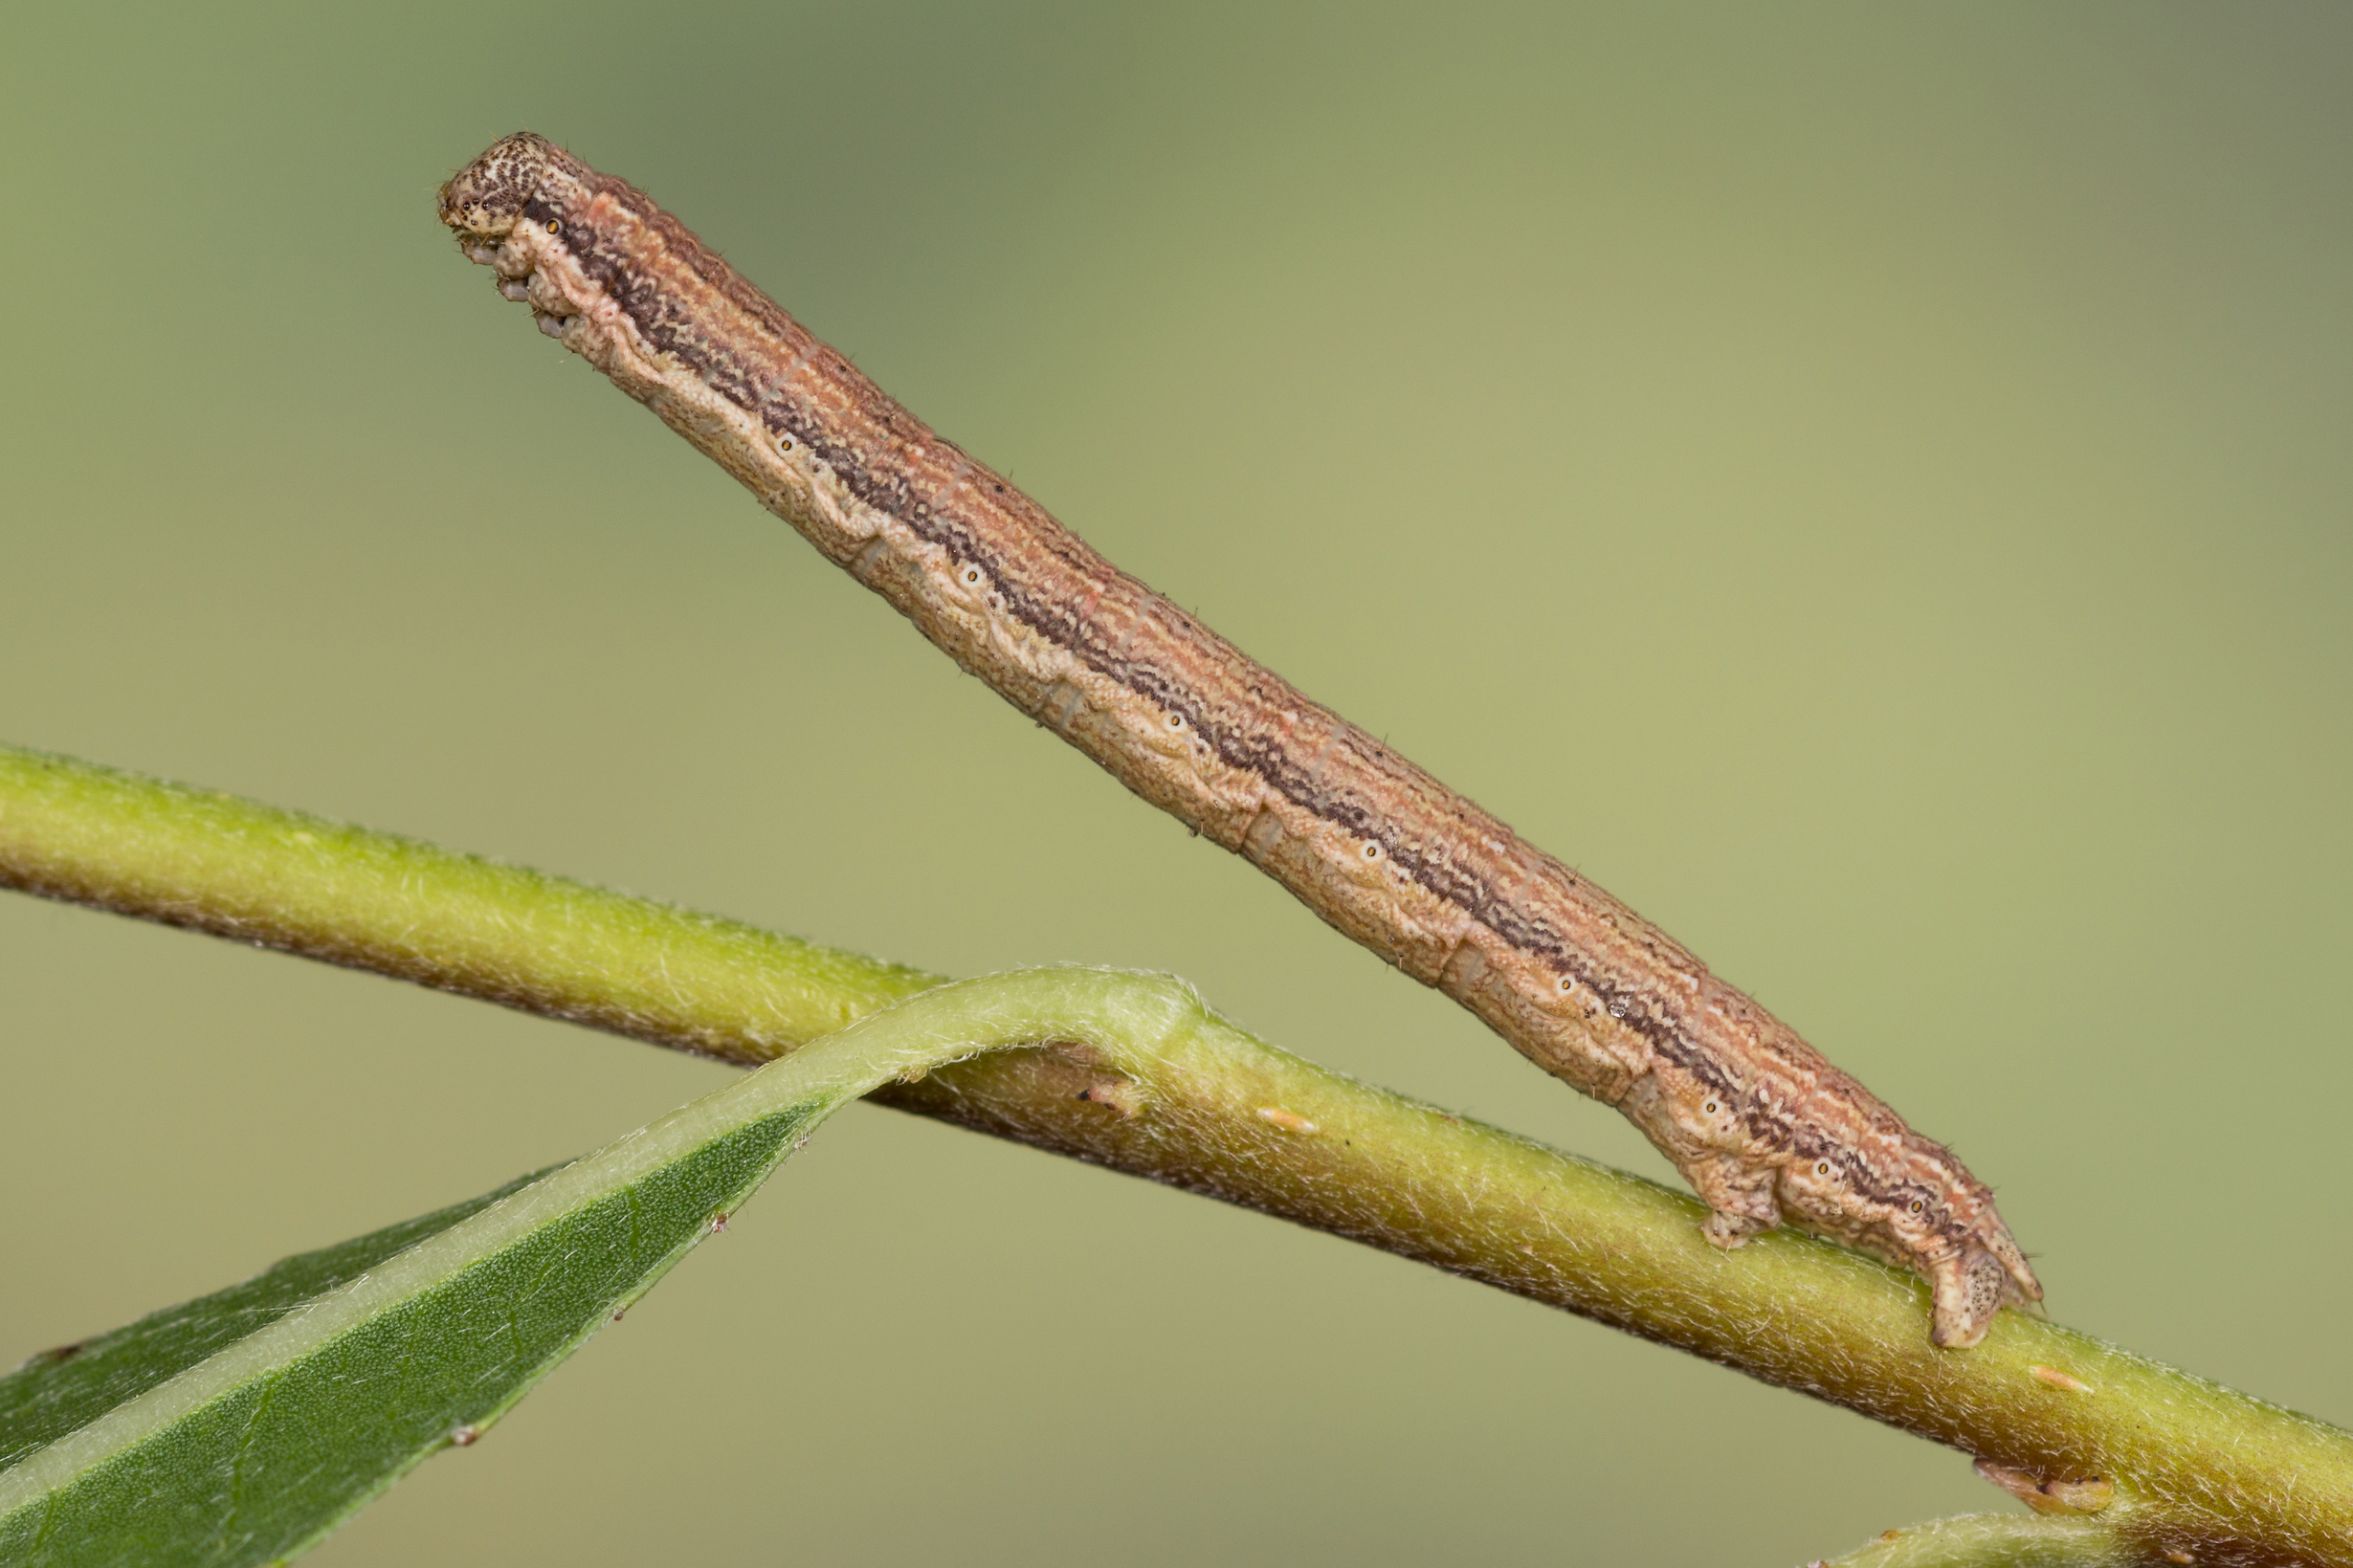 Ematurga atomaria - Пяденица вересковая (травяная)